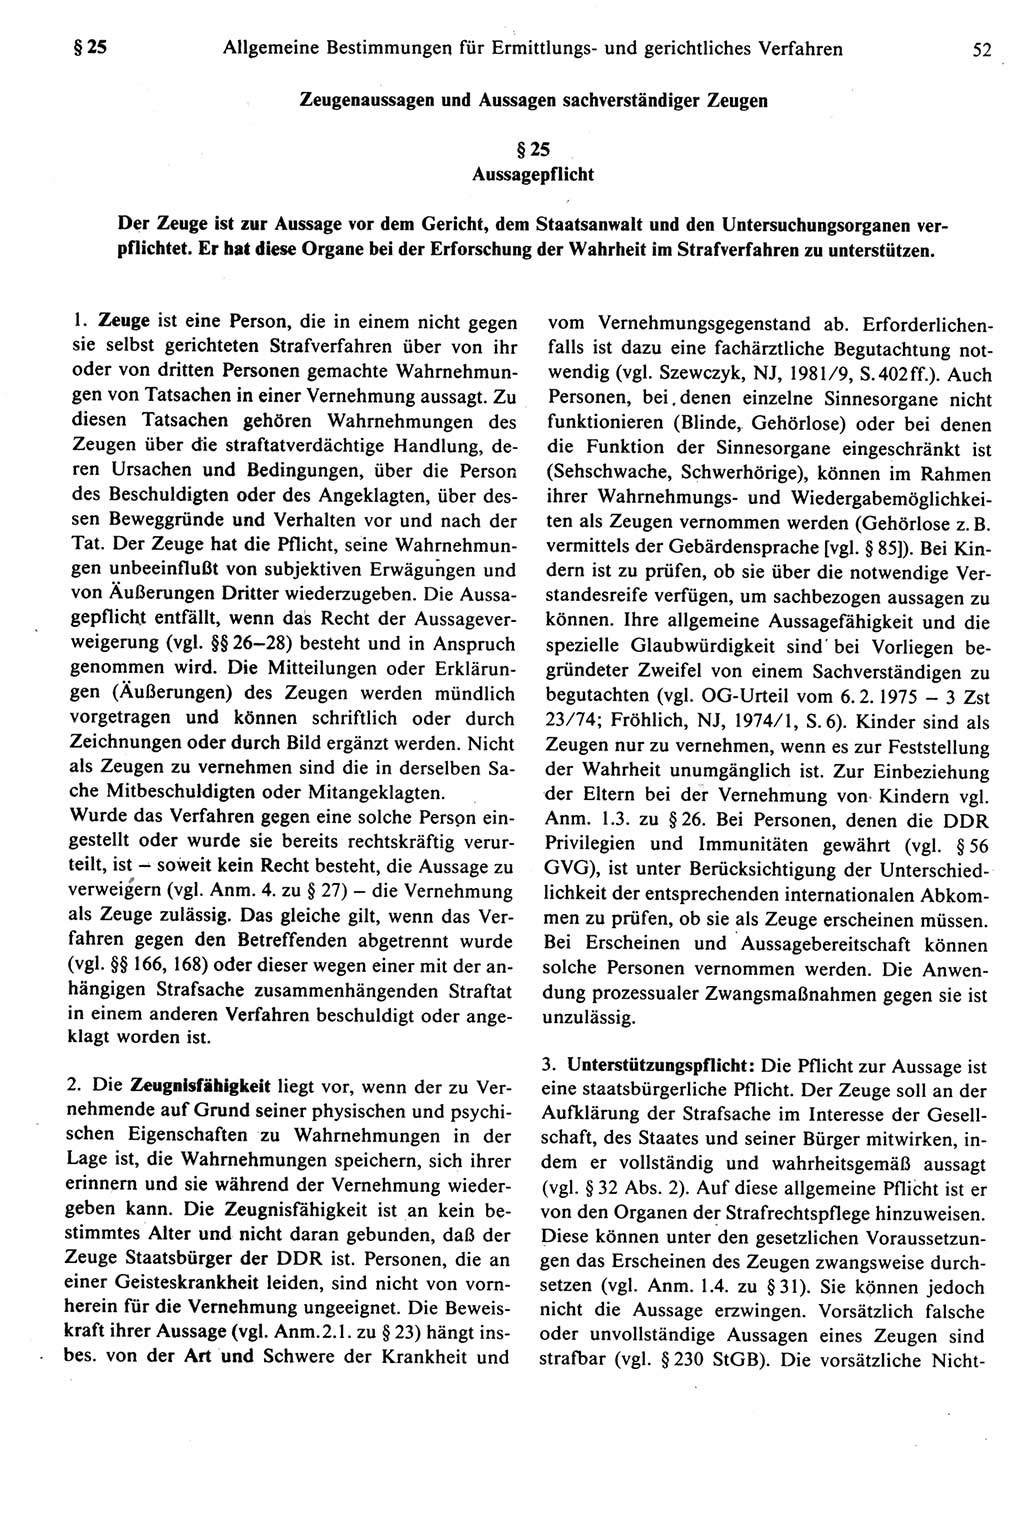 Strafprozeßrecht der DDR [Deutsche Demokratische Republik], Kommentar zur Strafprozeßordnung (StPO) 1987, Seite 52 (Strafprozeßr. DDR Komm. StPO 1987, S. 52)